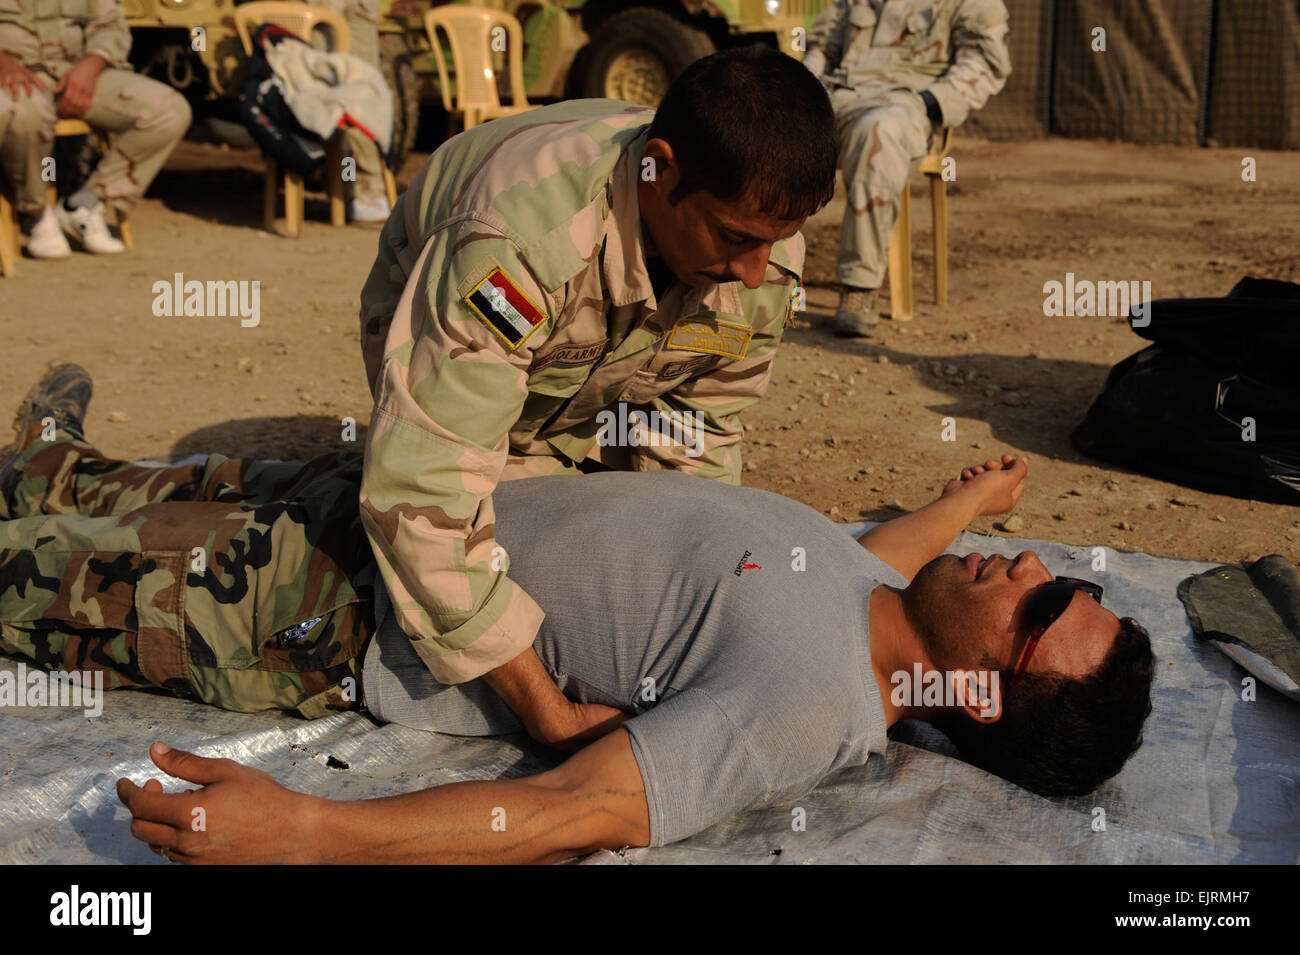 Un soldat irakien à partir de la 8e Division, l'armée iraquienne, vérifie son autre soldat de sang au cours de la formation médicale de l'armée américaine avec des soldats des forces spéciales, sur Camp Diwaniya, l'Iraq, le 1 décembre 2008. Des soldats irakiens sont formés par des soldats américains afin qu'ils soient prêts à assurer la sécurité de leur pays. Eric Harris Senior Airman Banque D'Images